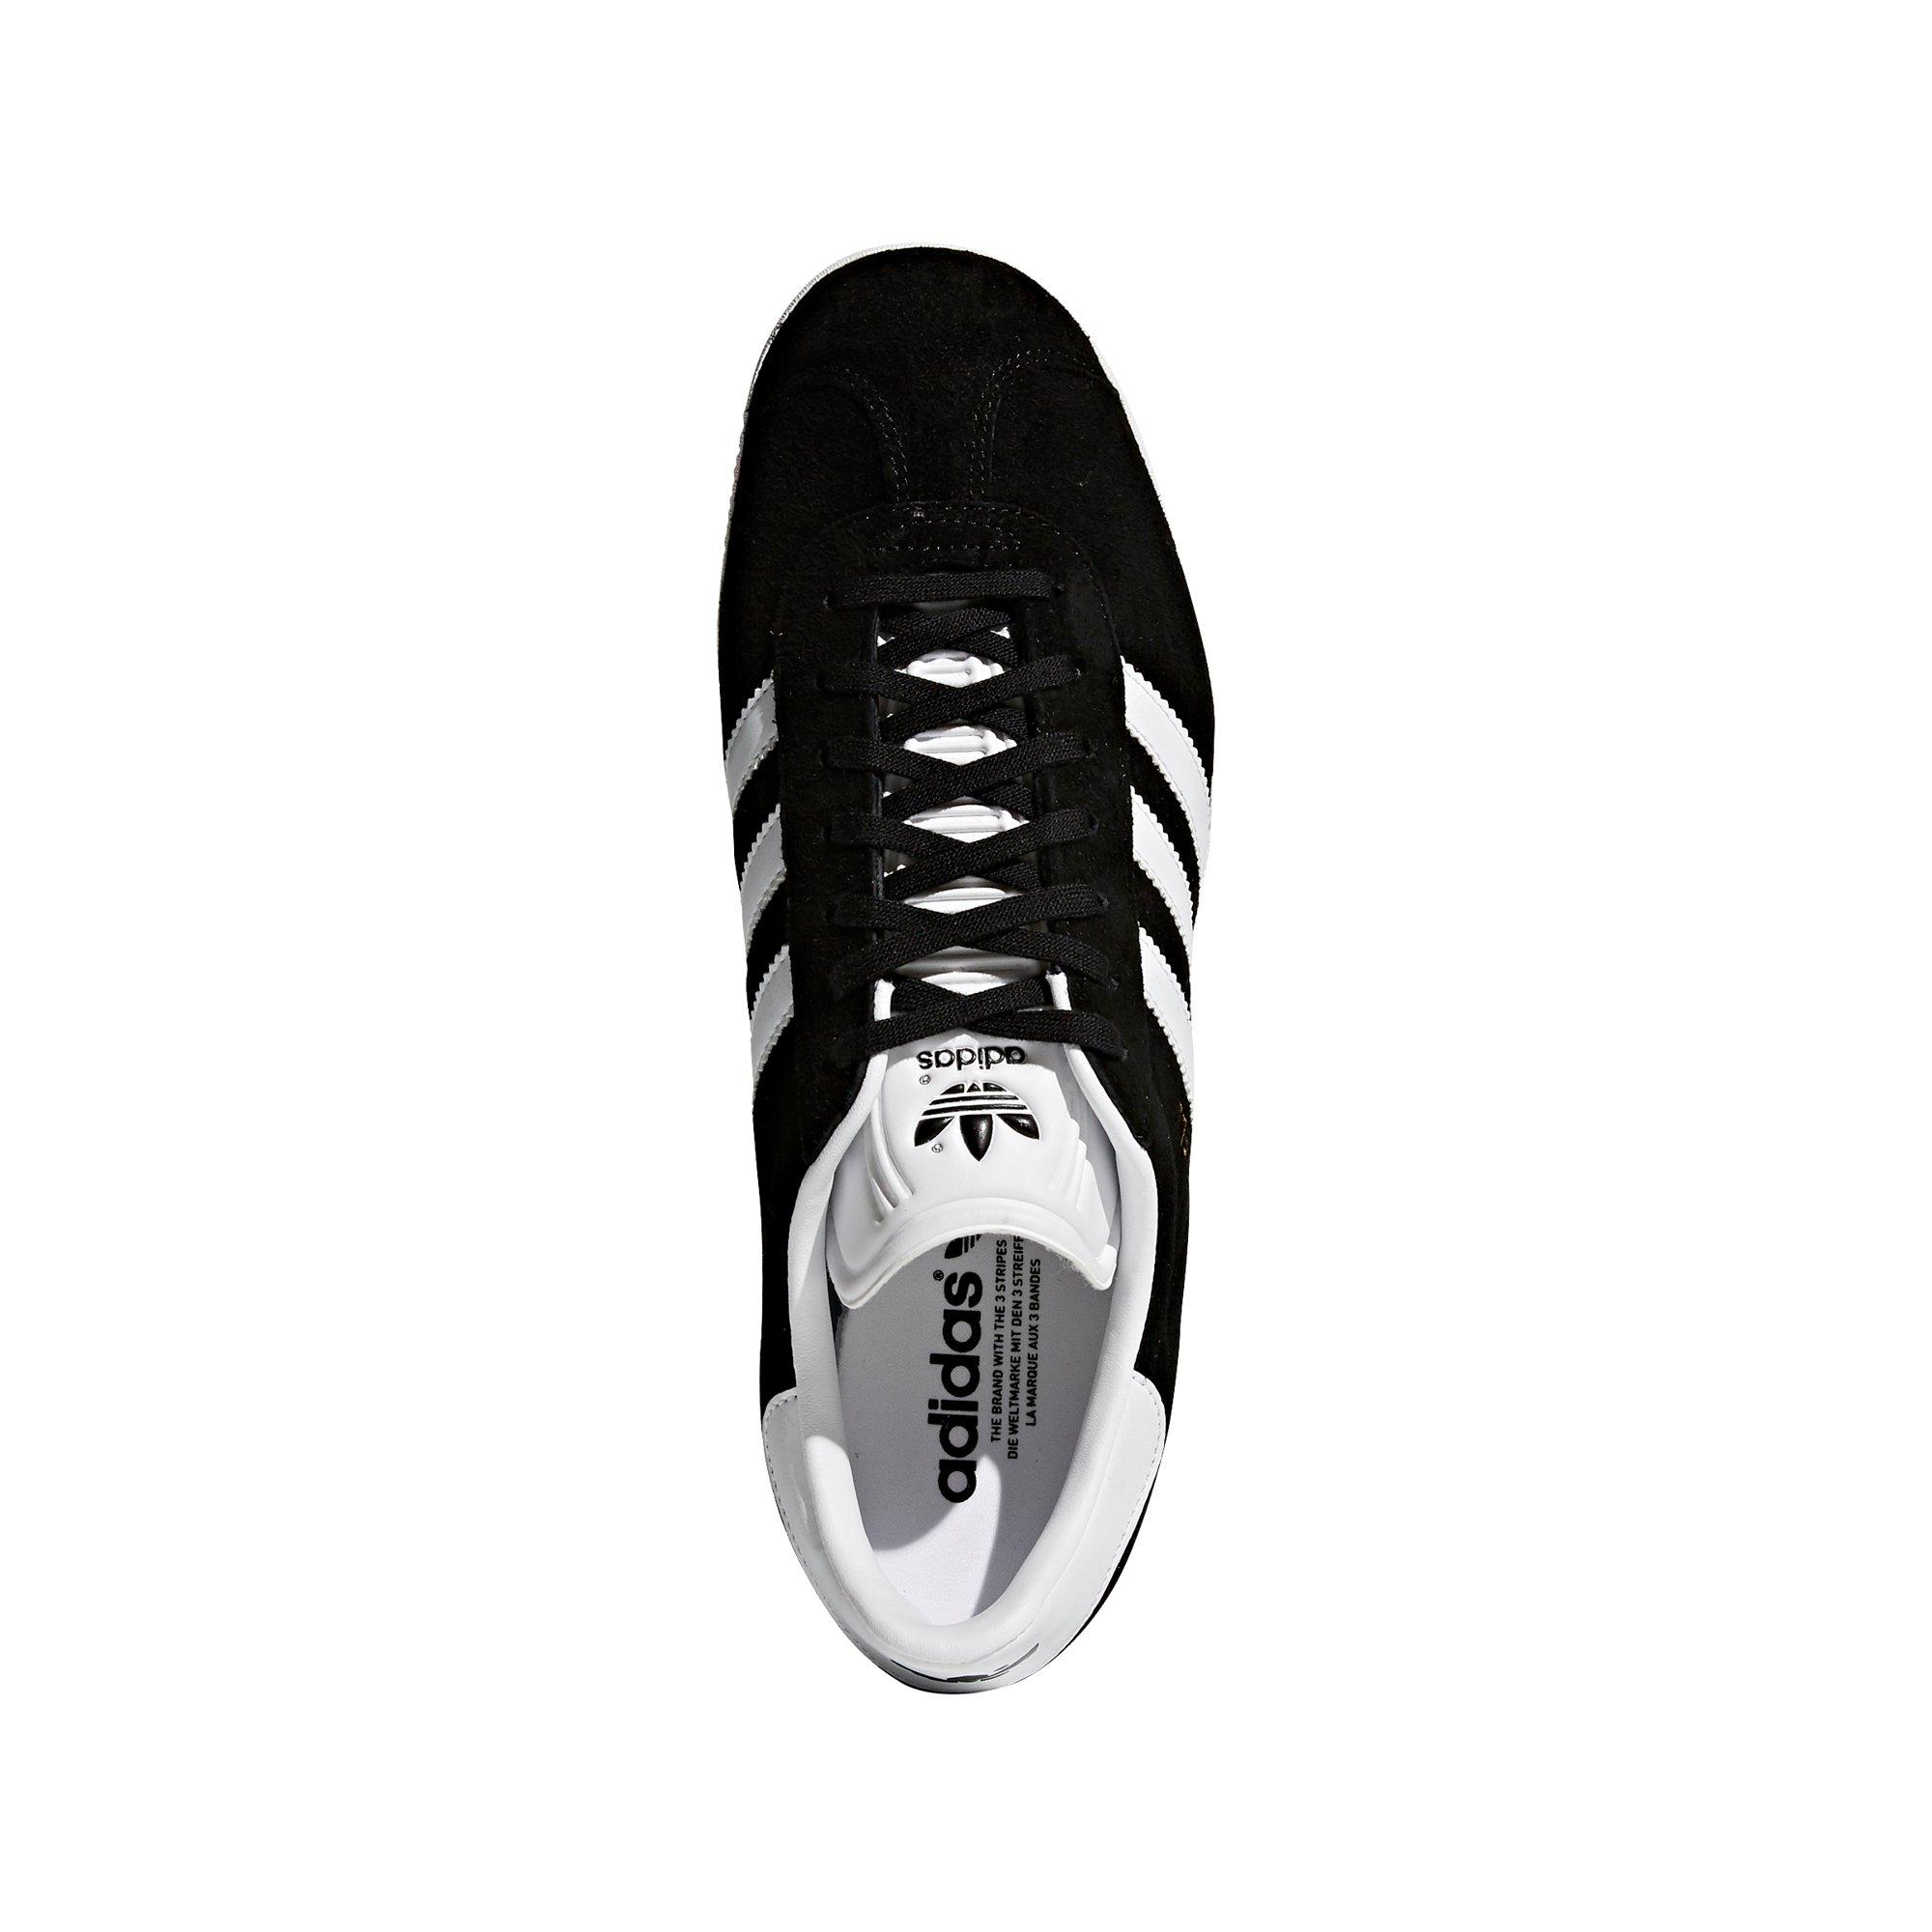 adidas Originals "Black/White" Men's Shoe